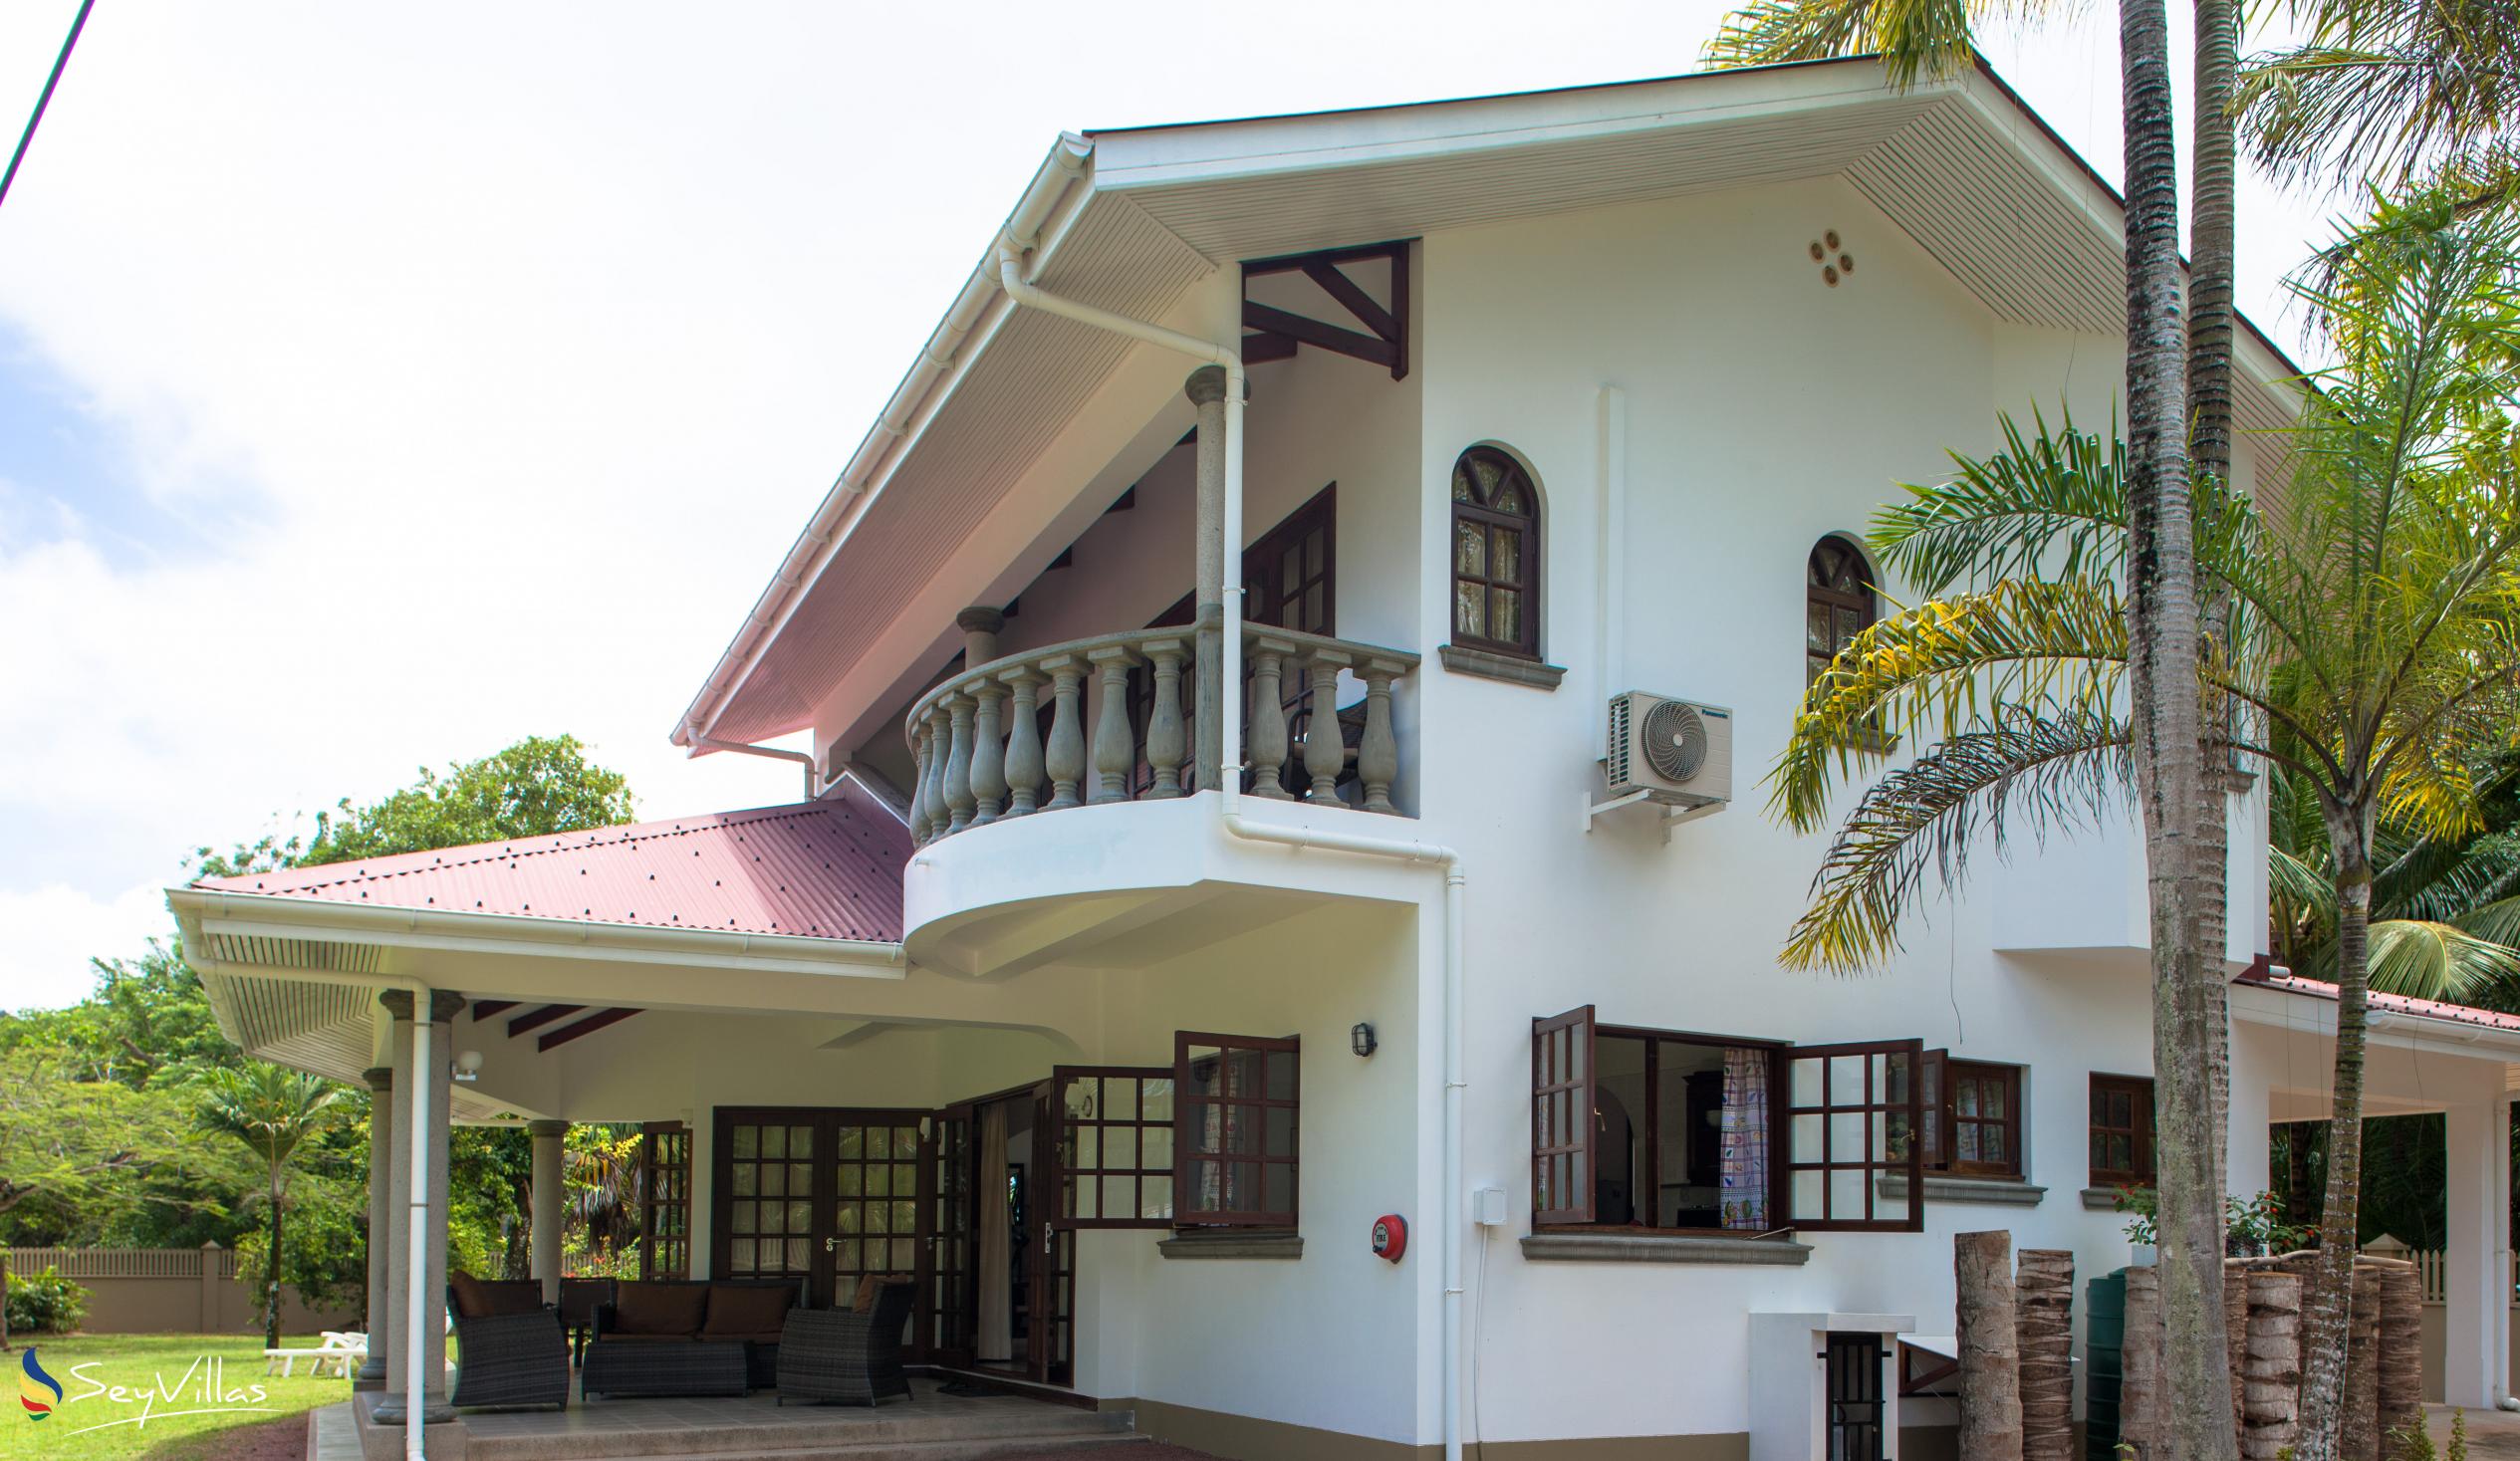 Foto 4: Villa Saint Sauveur - Aussenbereich - Praslin (Seychellen)